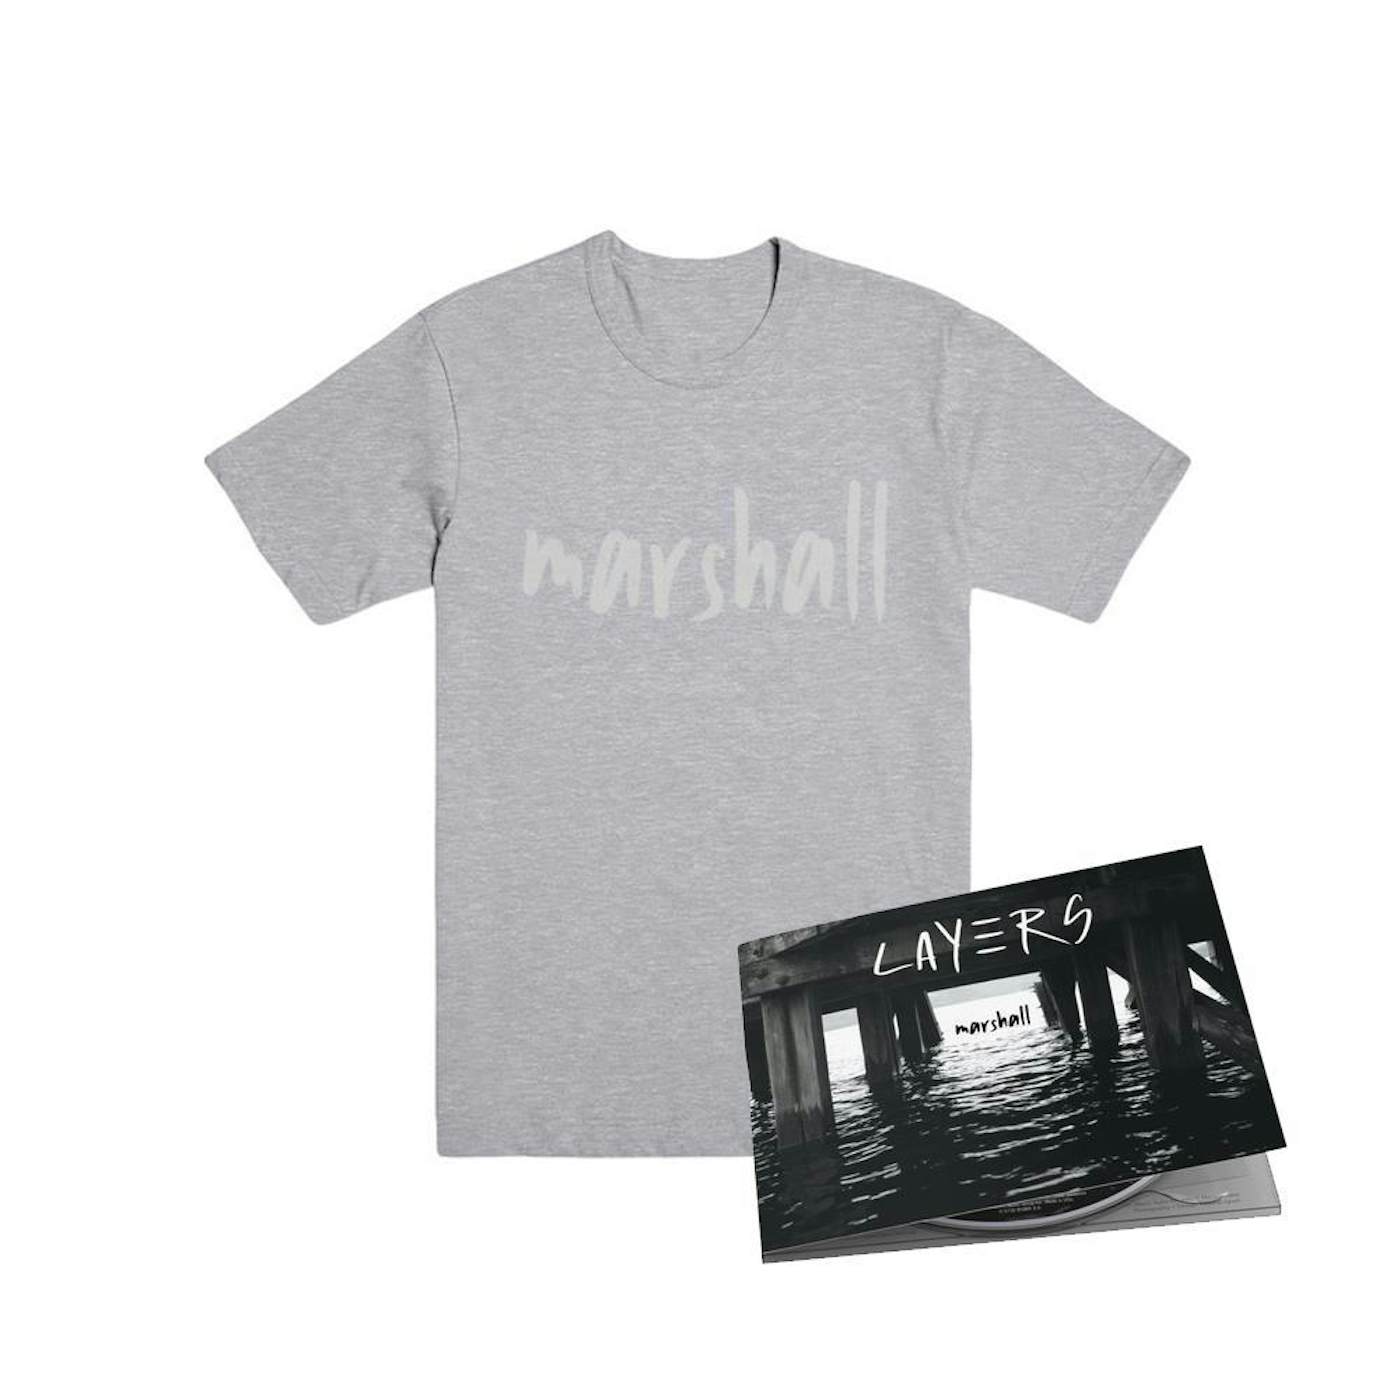 Marshall - Layers CD + Tee Bundle